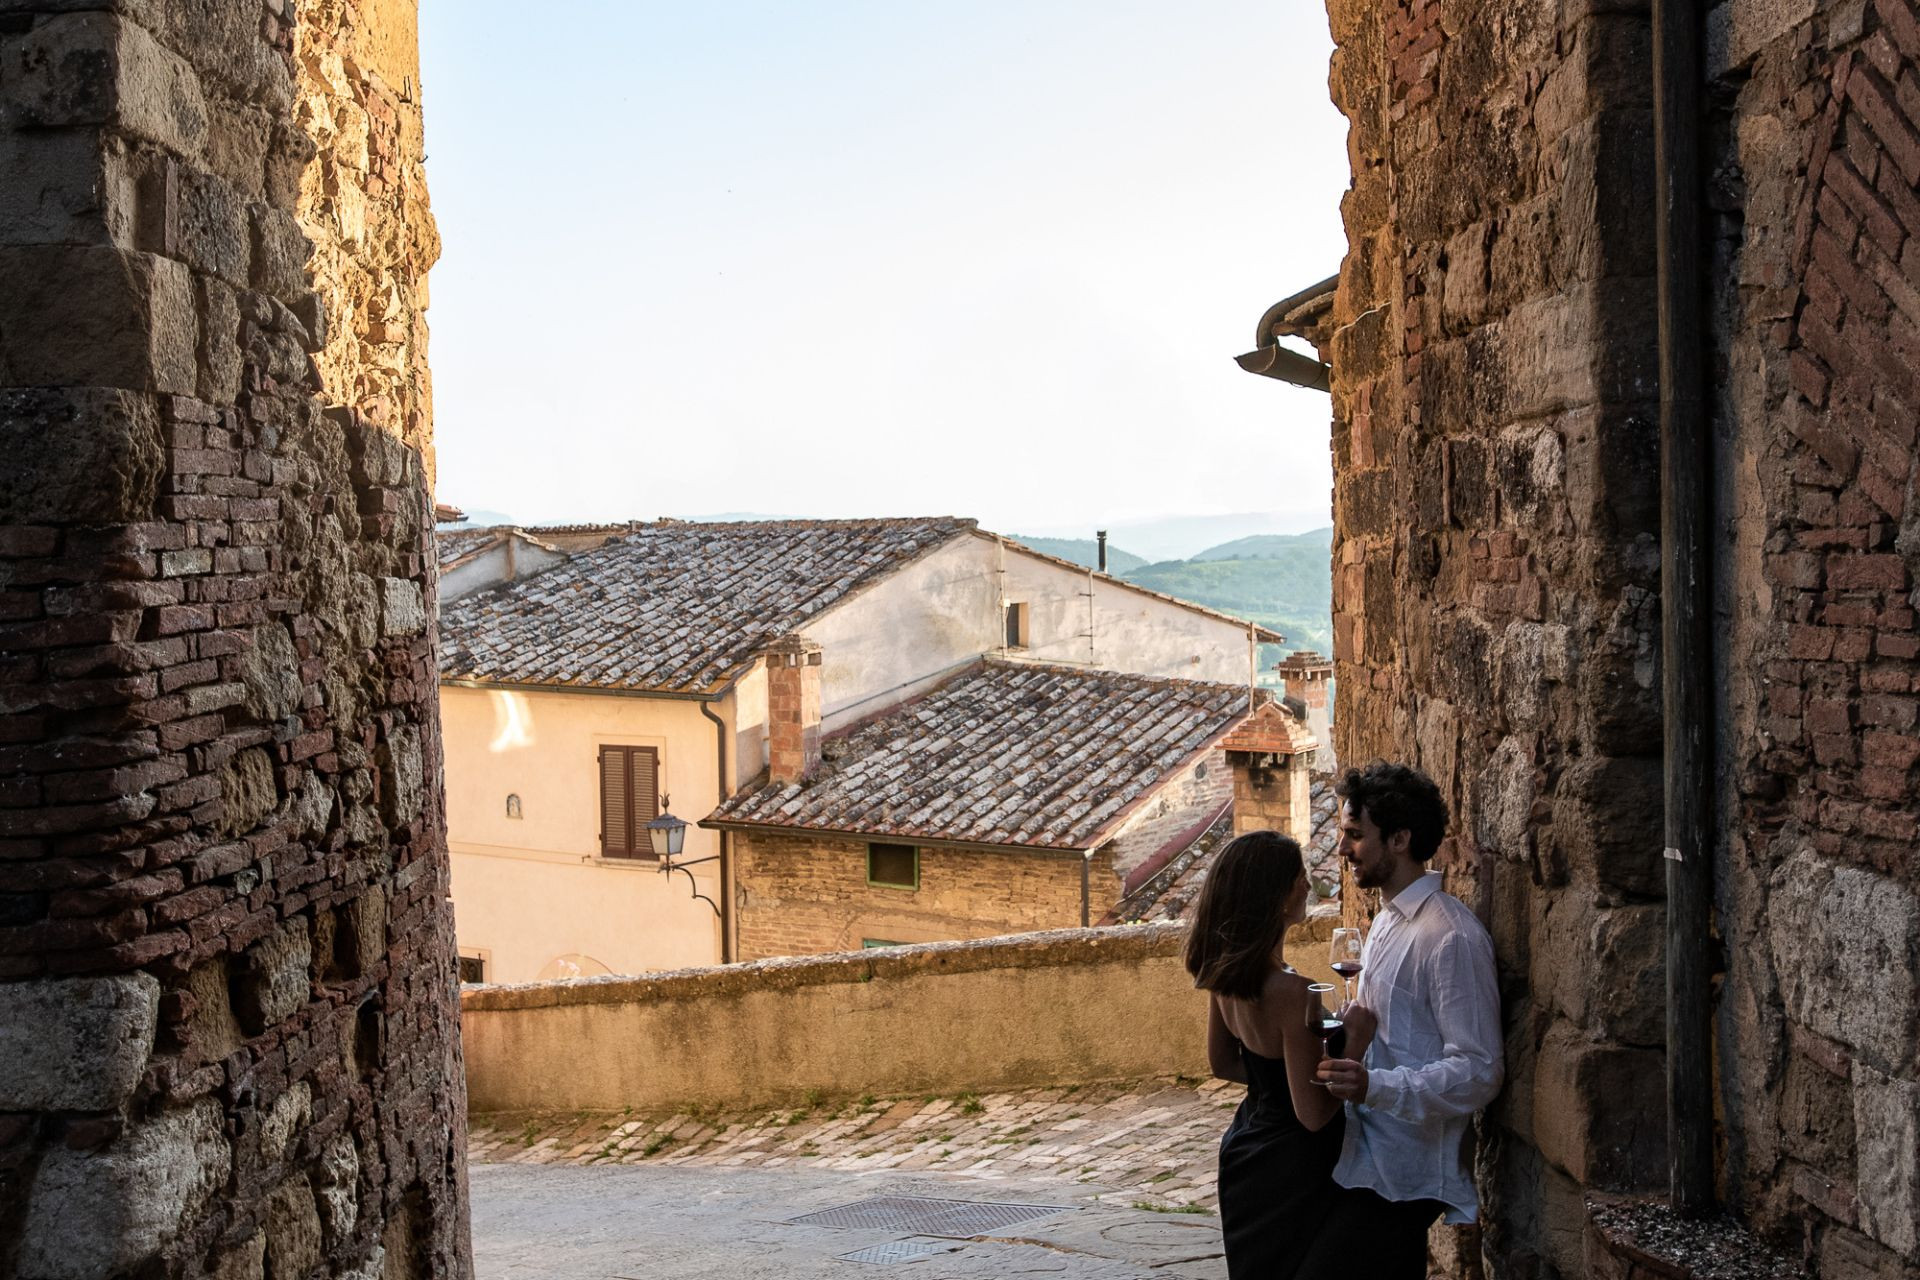 Valdichiana Senese: the most romantic side of Tuscany